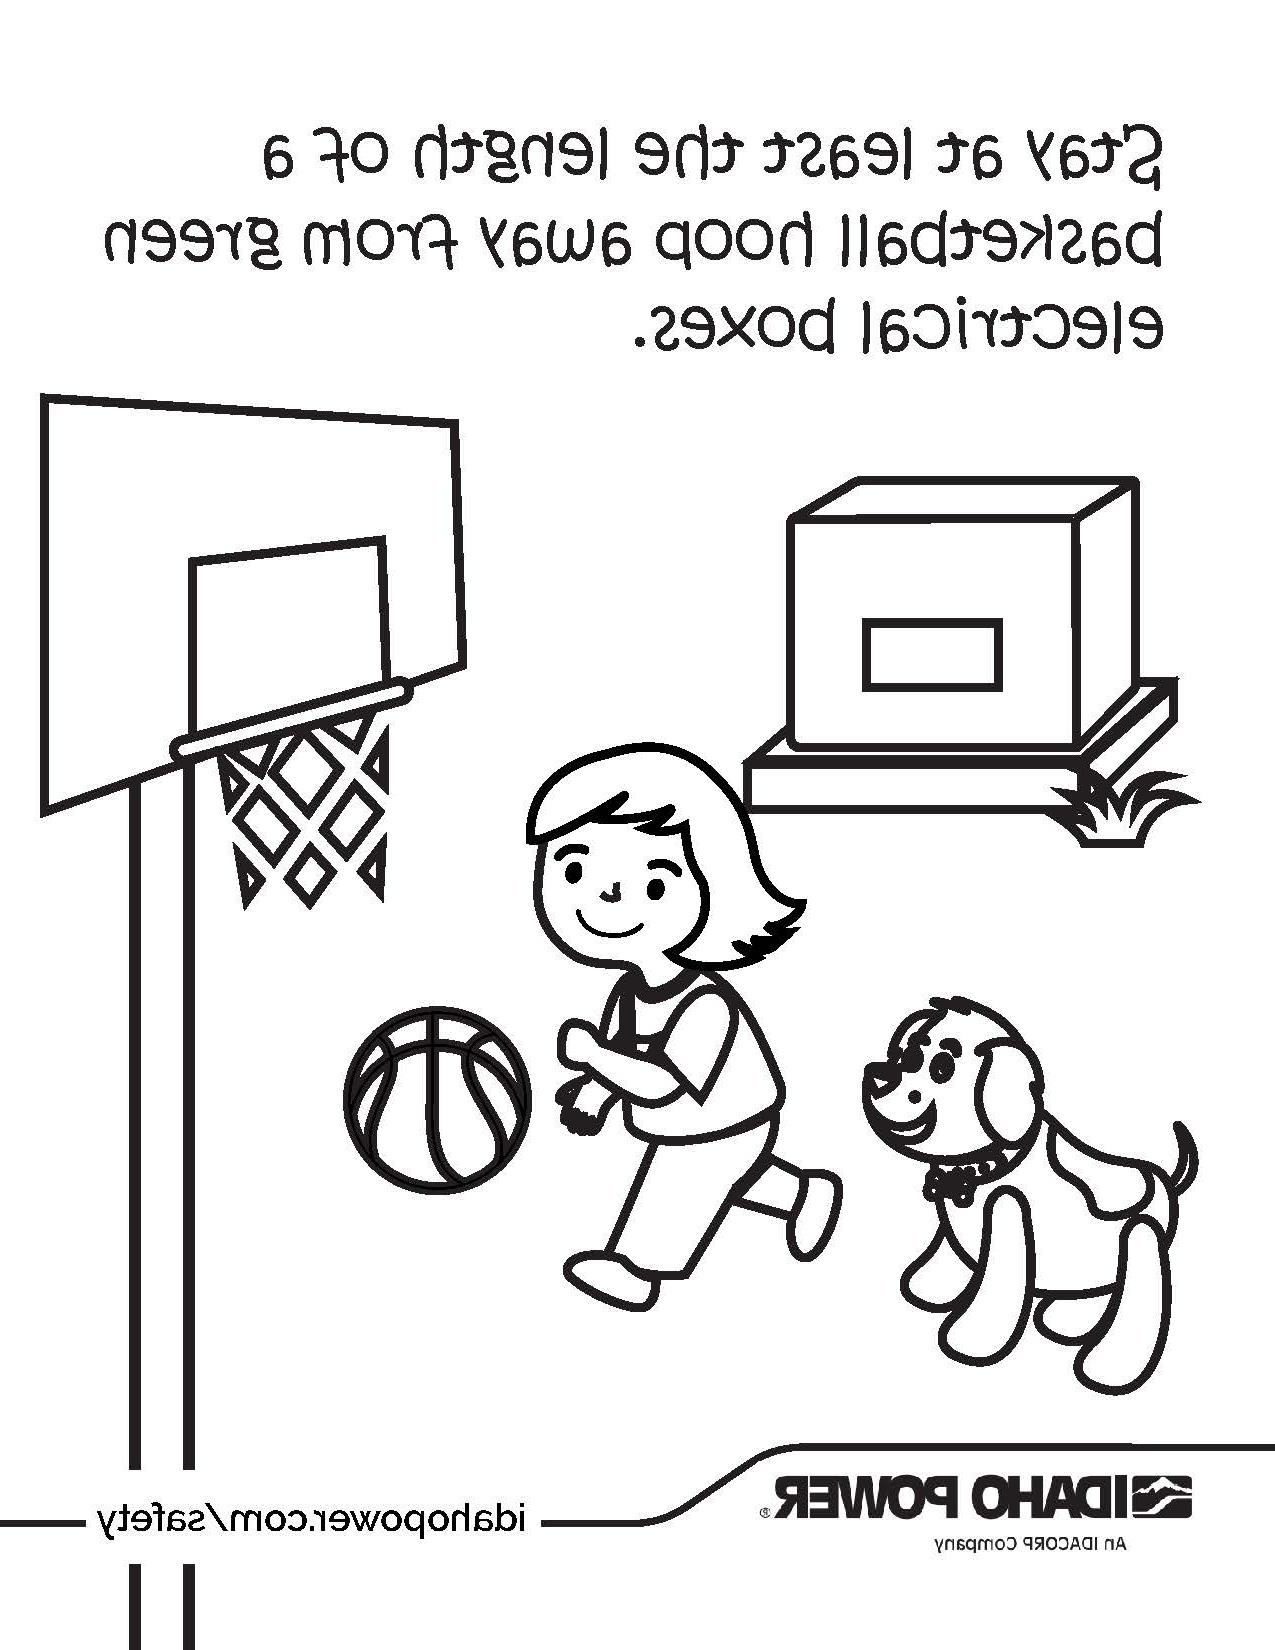 一个女孩打篮球的涂色页上写着, 与绿色电器箱保持至少一个篮球圈的距离